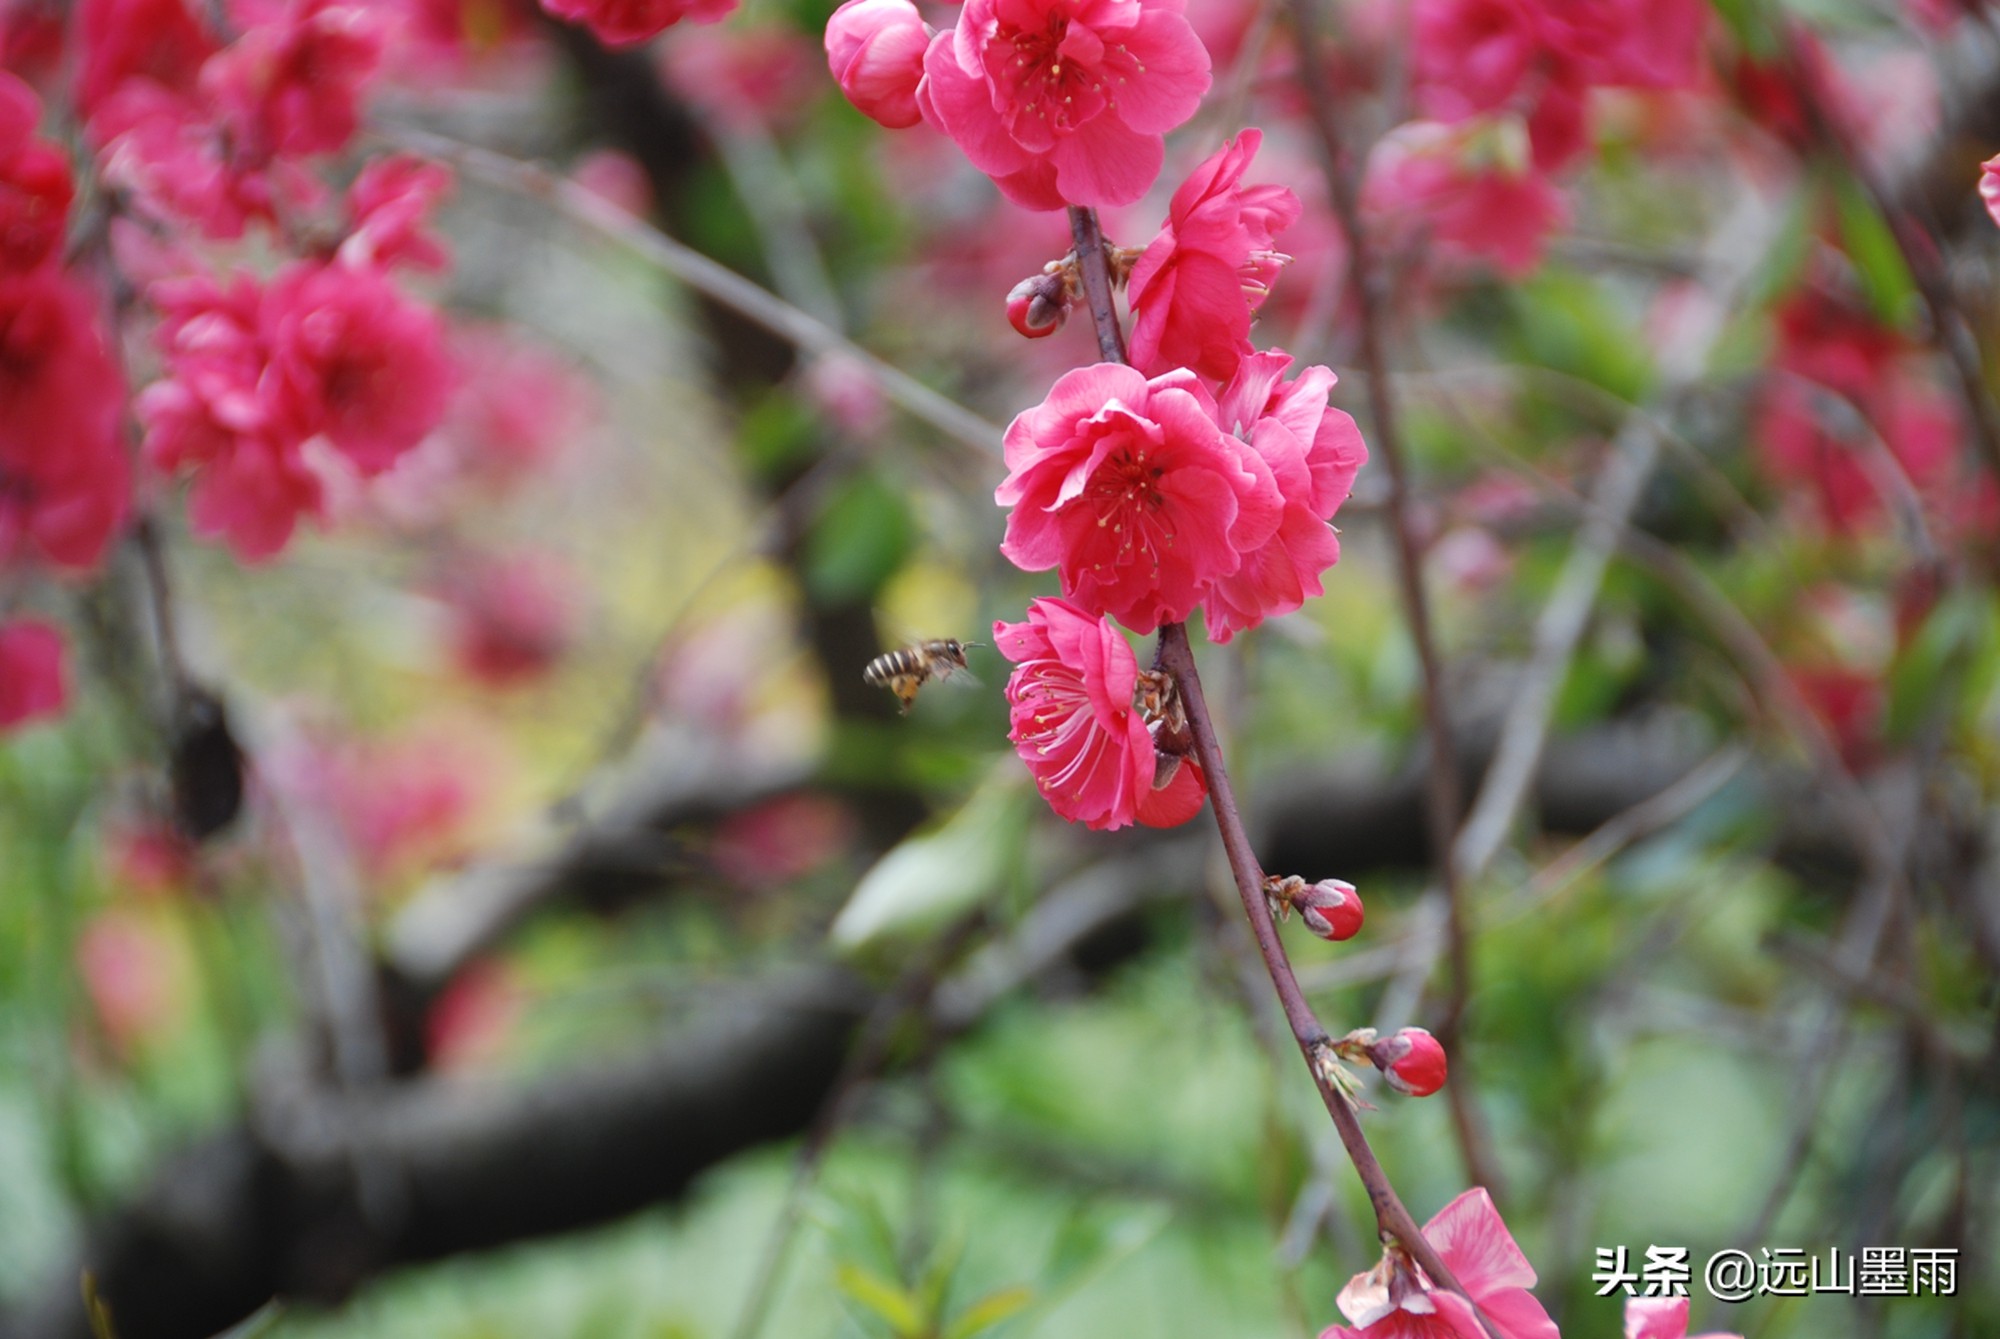 碧桃:一种观花不食果的桃树,盛开在春天里,是一帘很美的花瀑